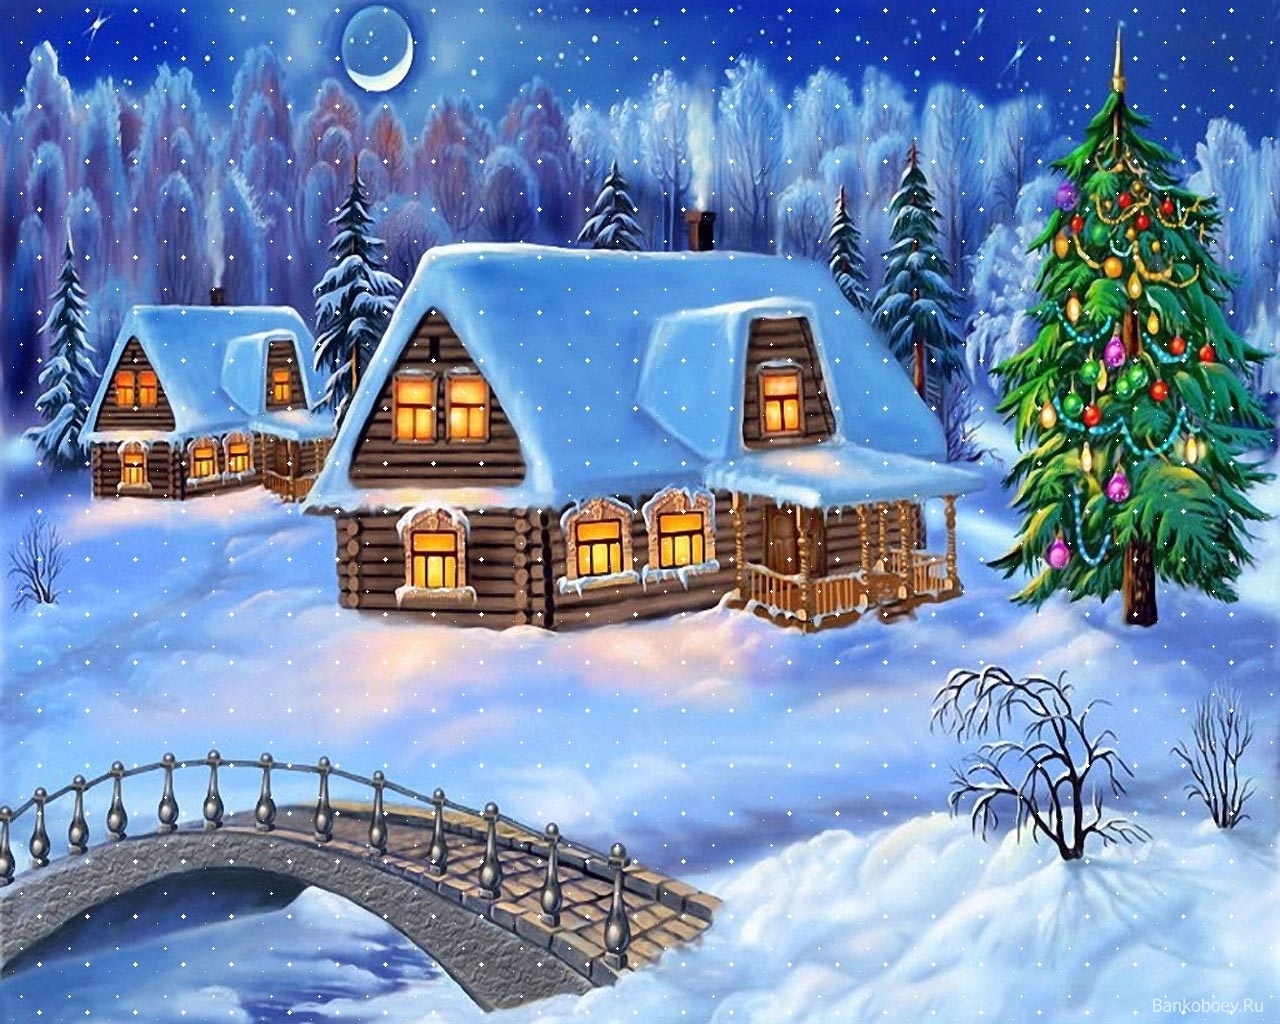 wallpapers pictures, winter, bridges, landscape, houses, night, snow, blue